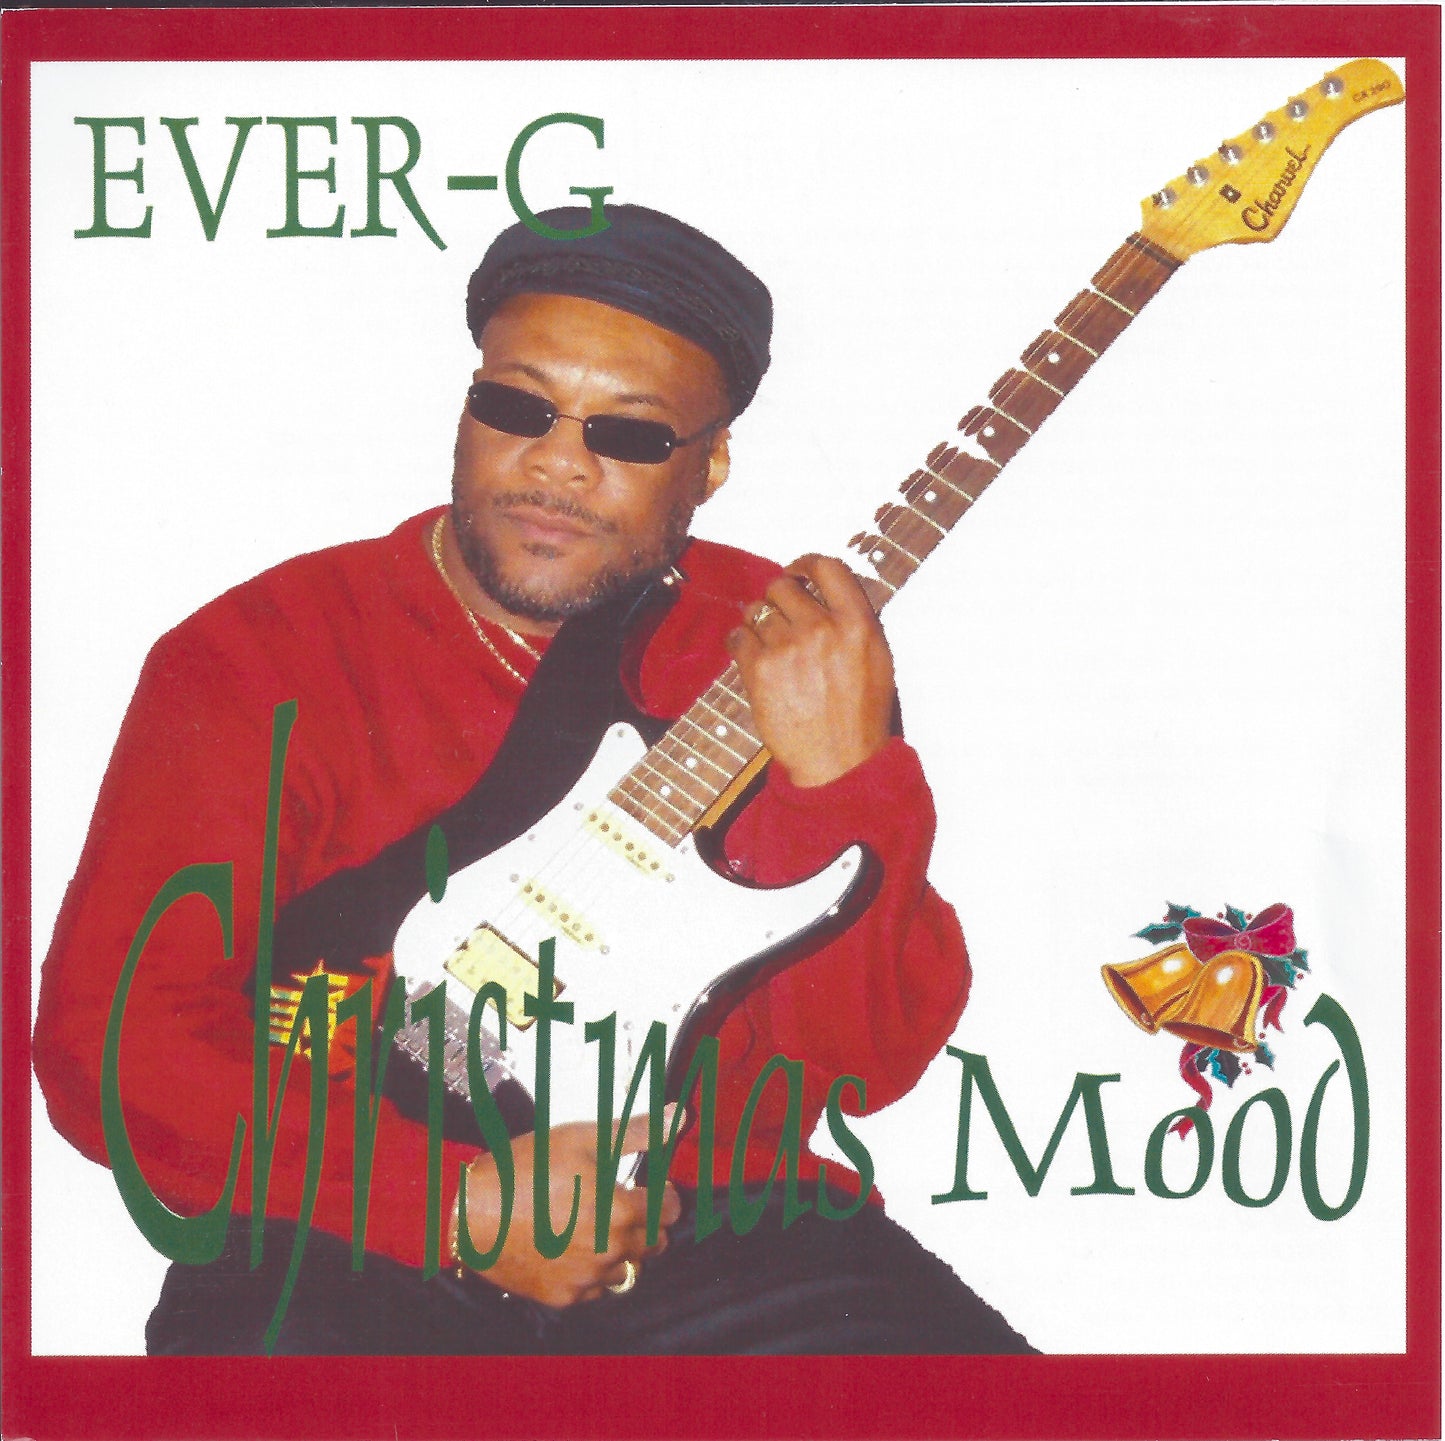 Ever-G - Christmas Mood Album